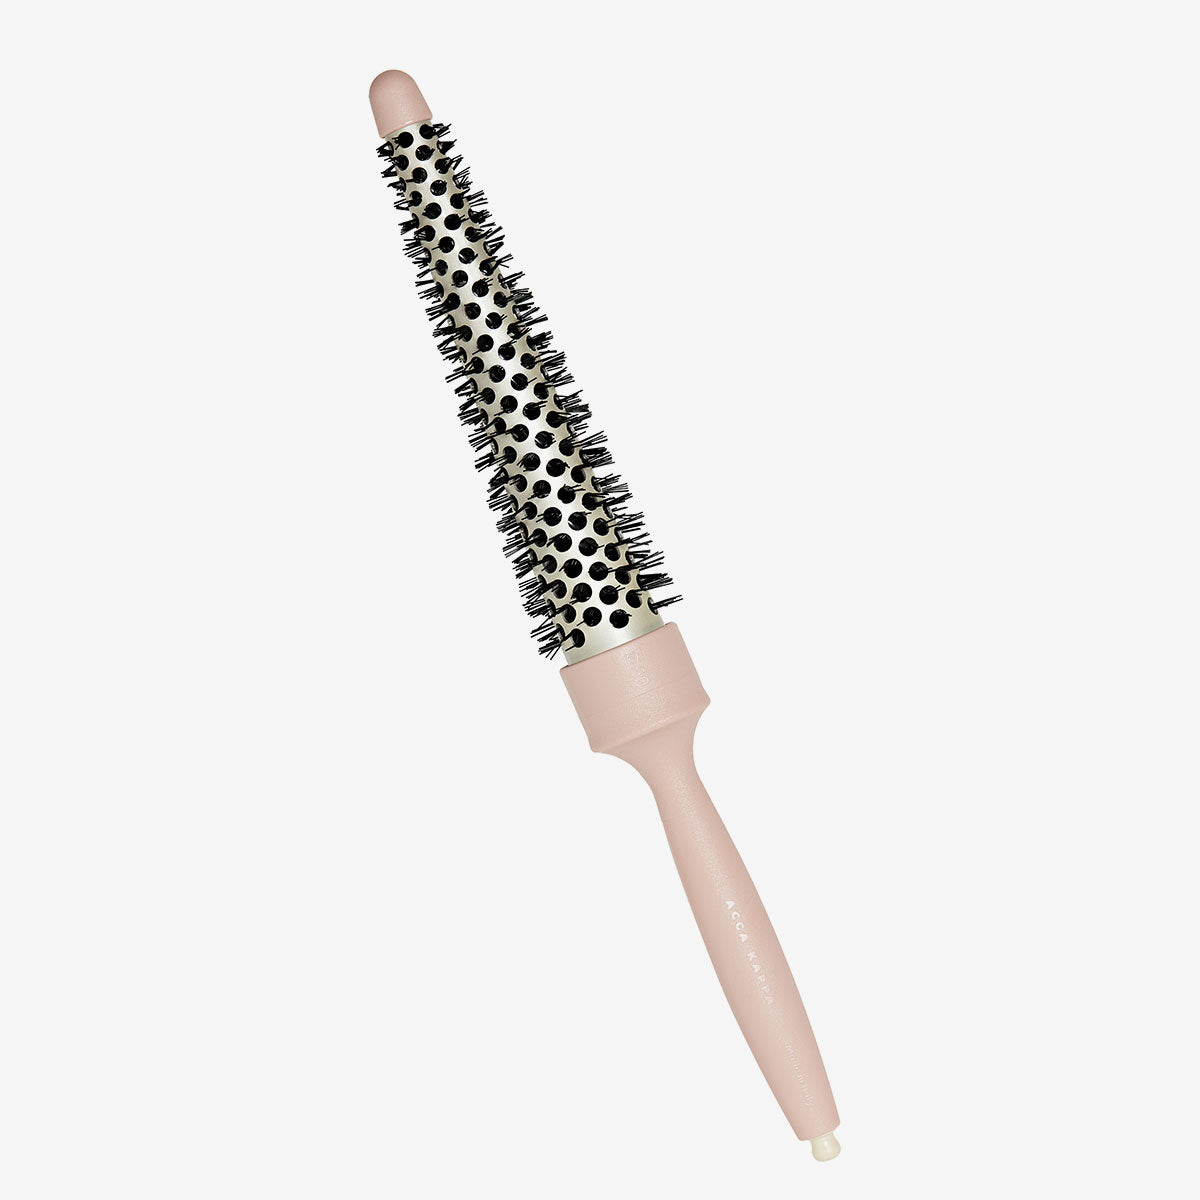 ACCA KAPPA Wavy Nylon Bristle Styling Brush - Pink